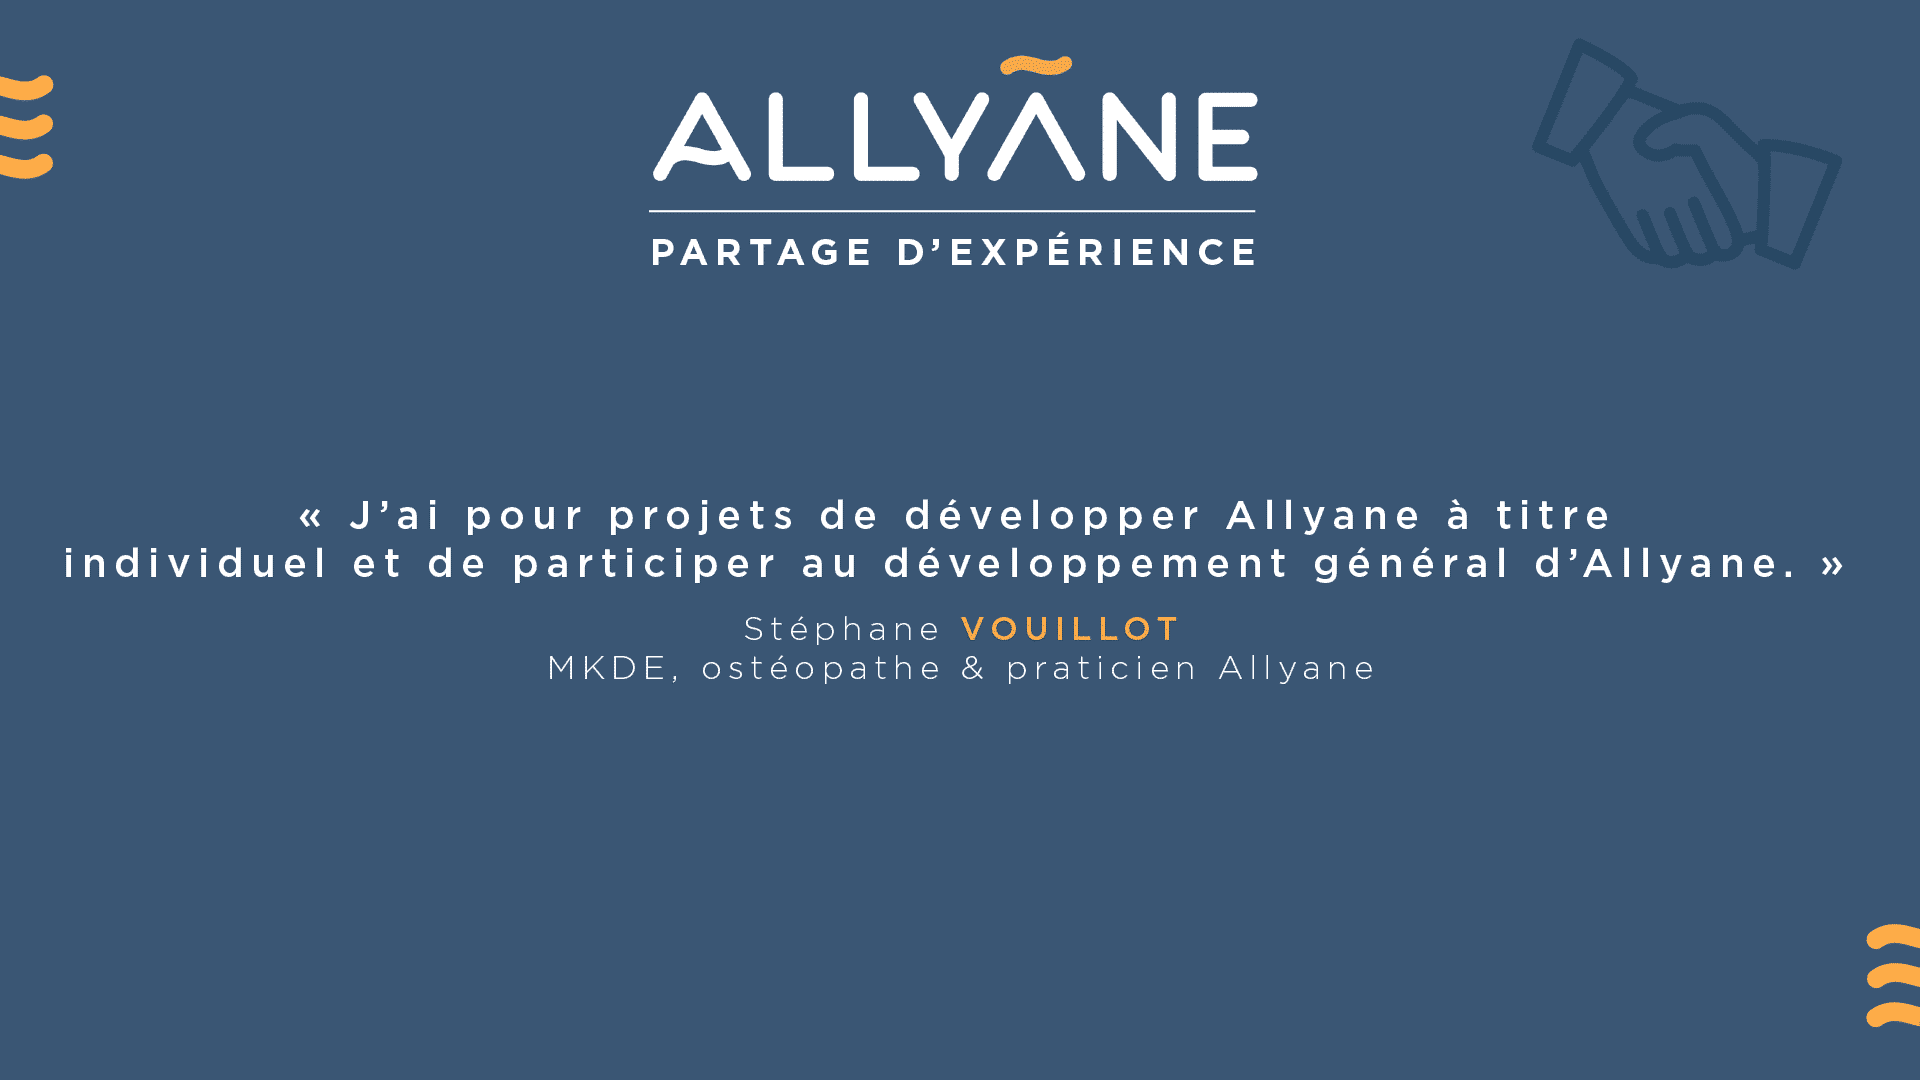 J’ai pour projets de développer Allyane à titre individuel et de participer au développement général d’Allyane.